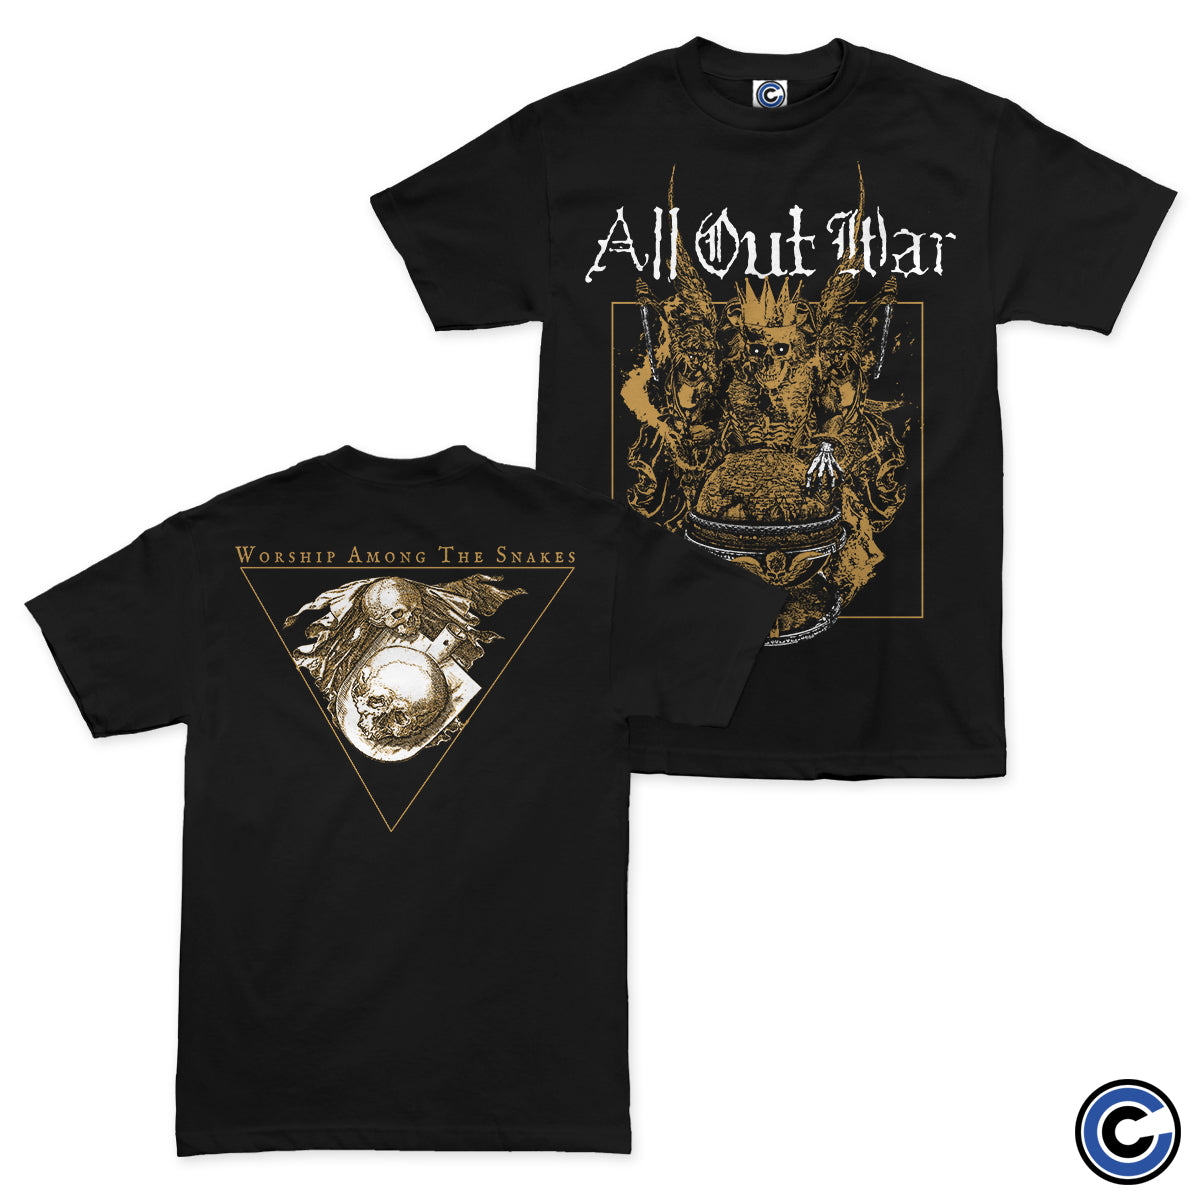 All Out War "Worship" Shirt